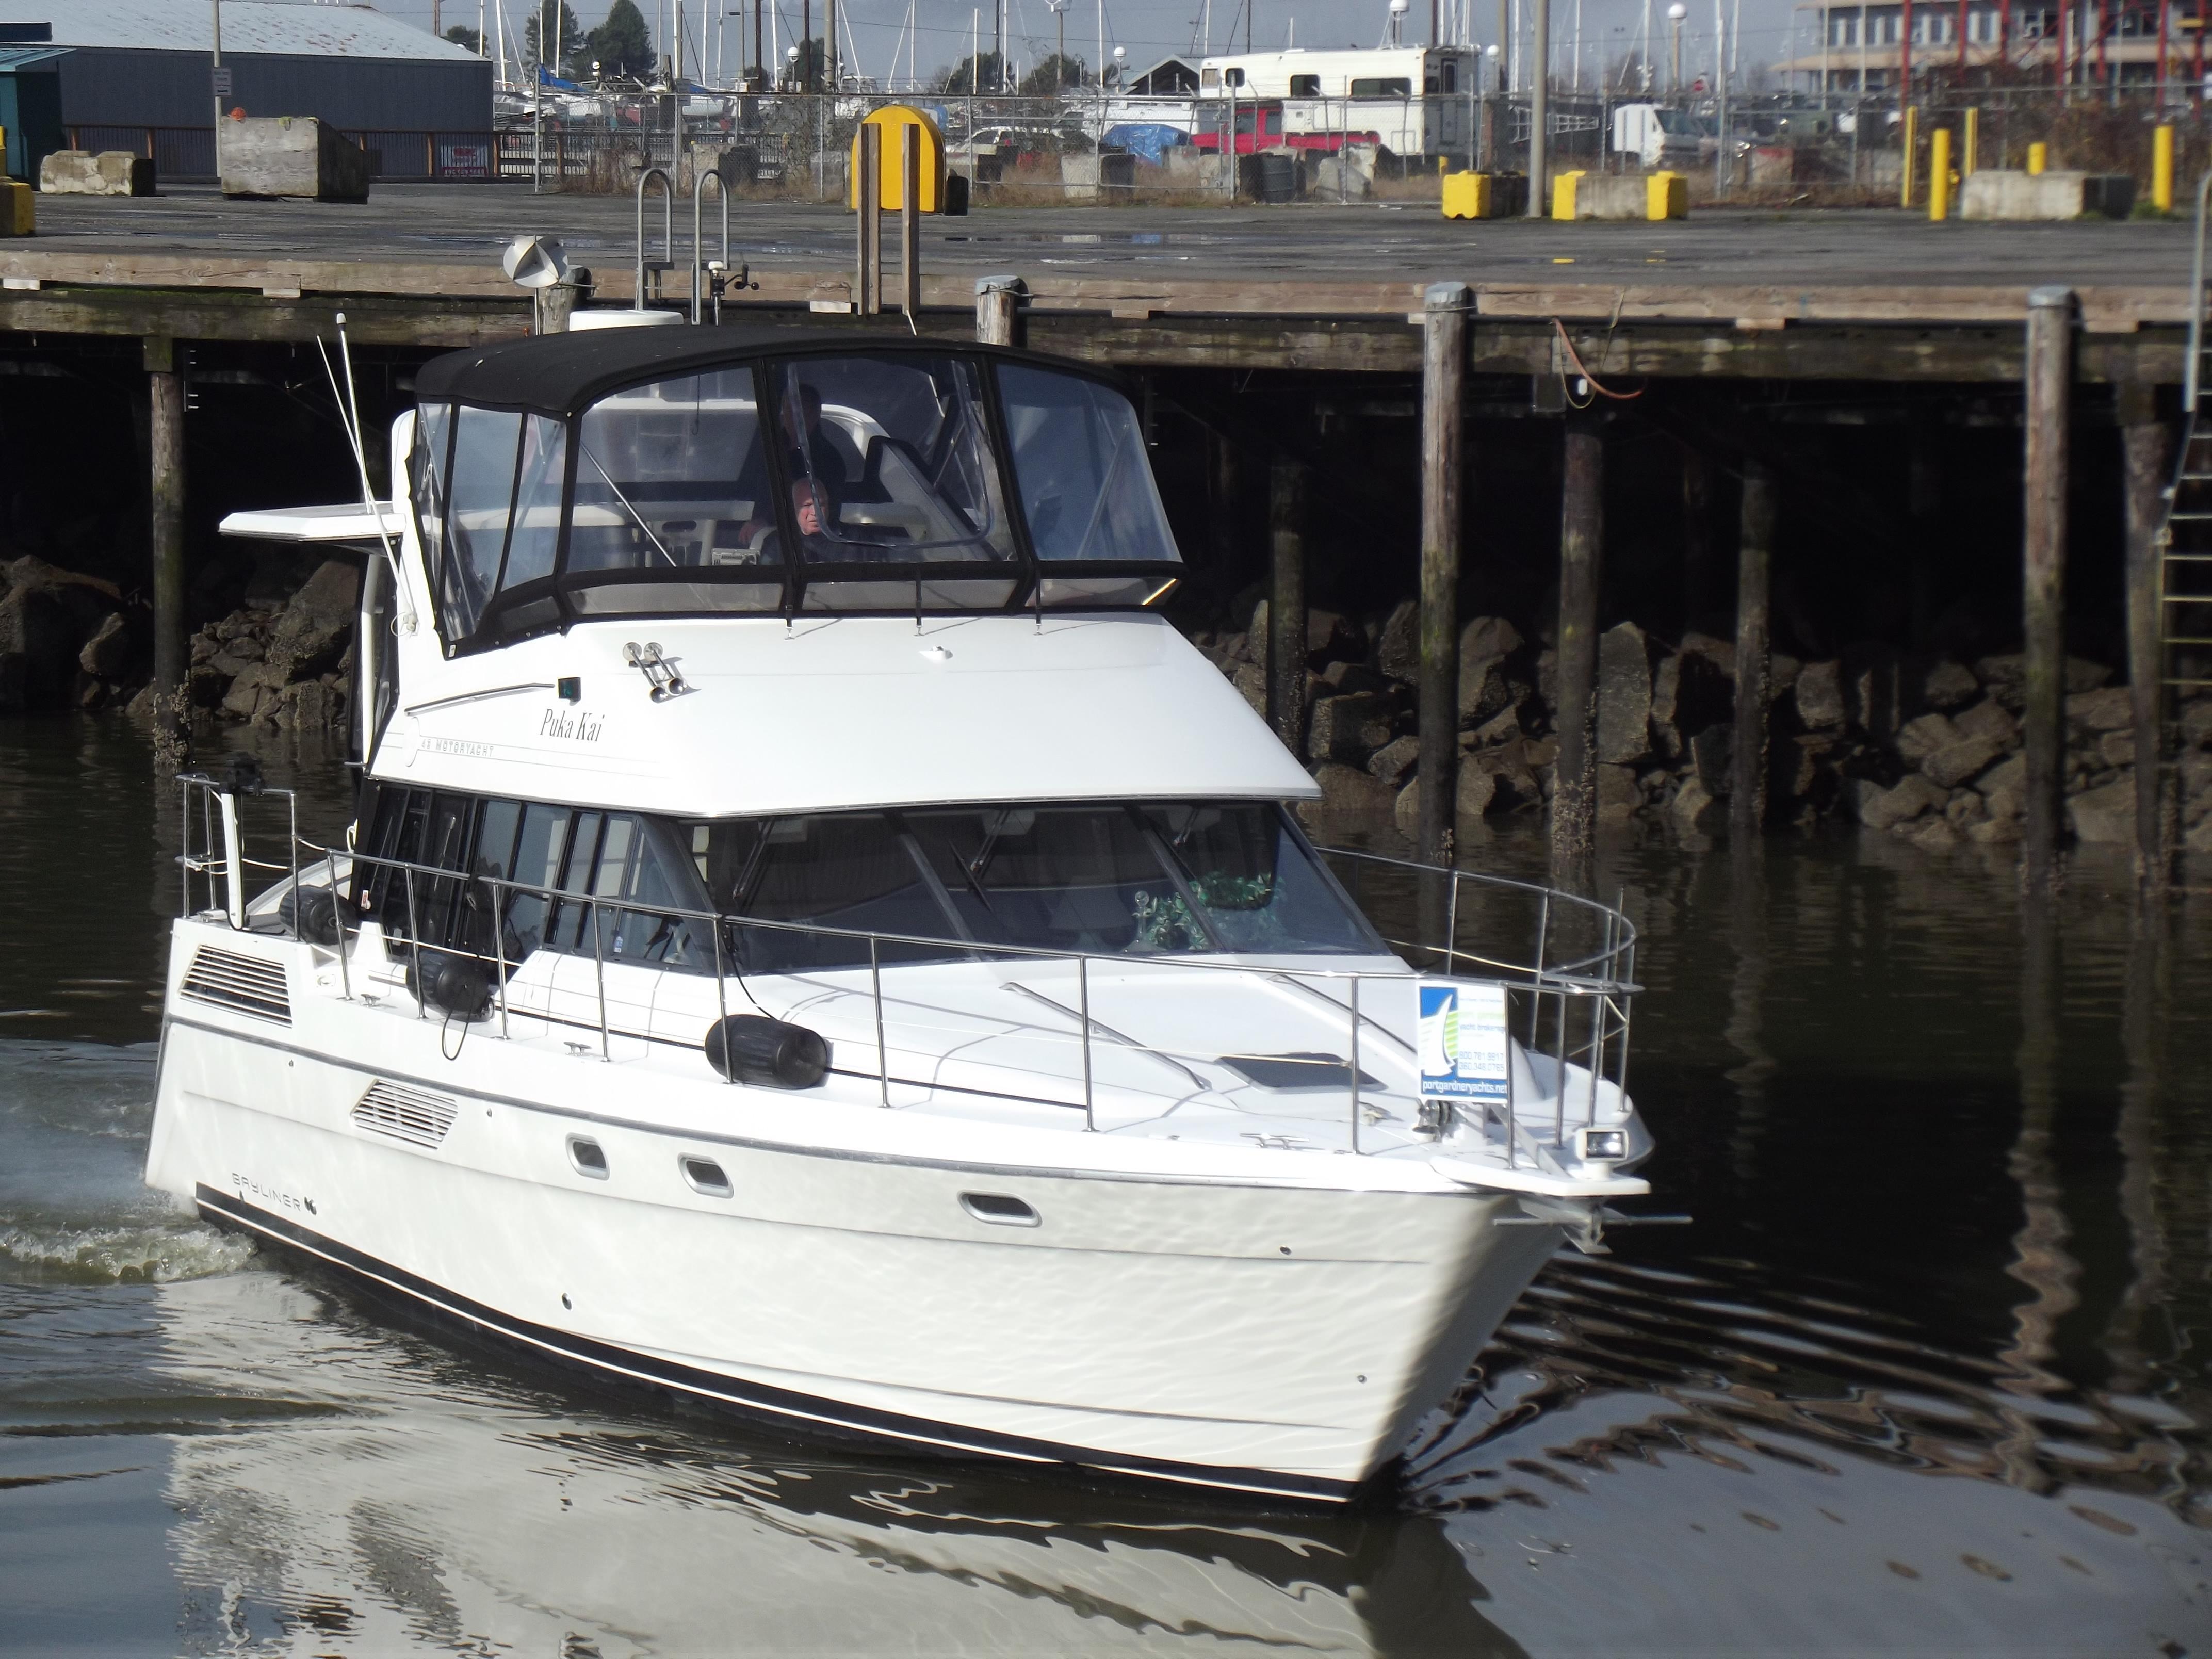 43' Bayliner 4387, Port of Everett Marina